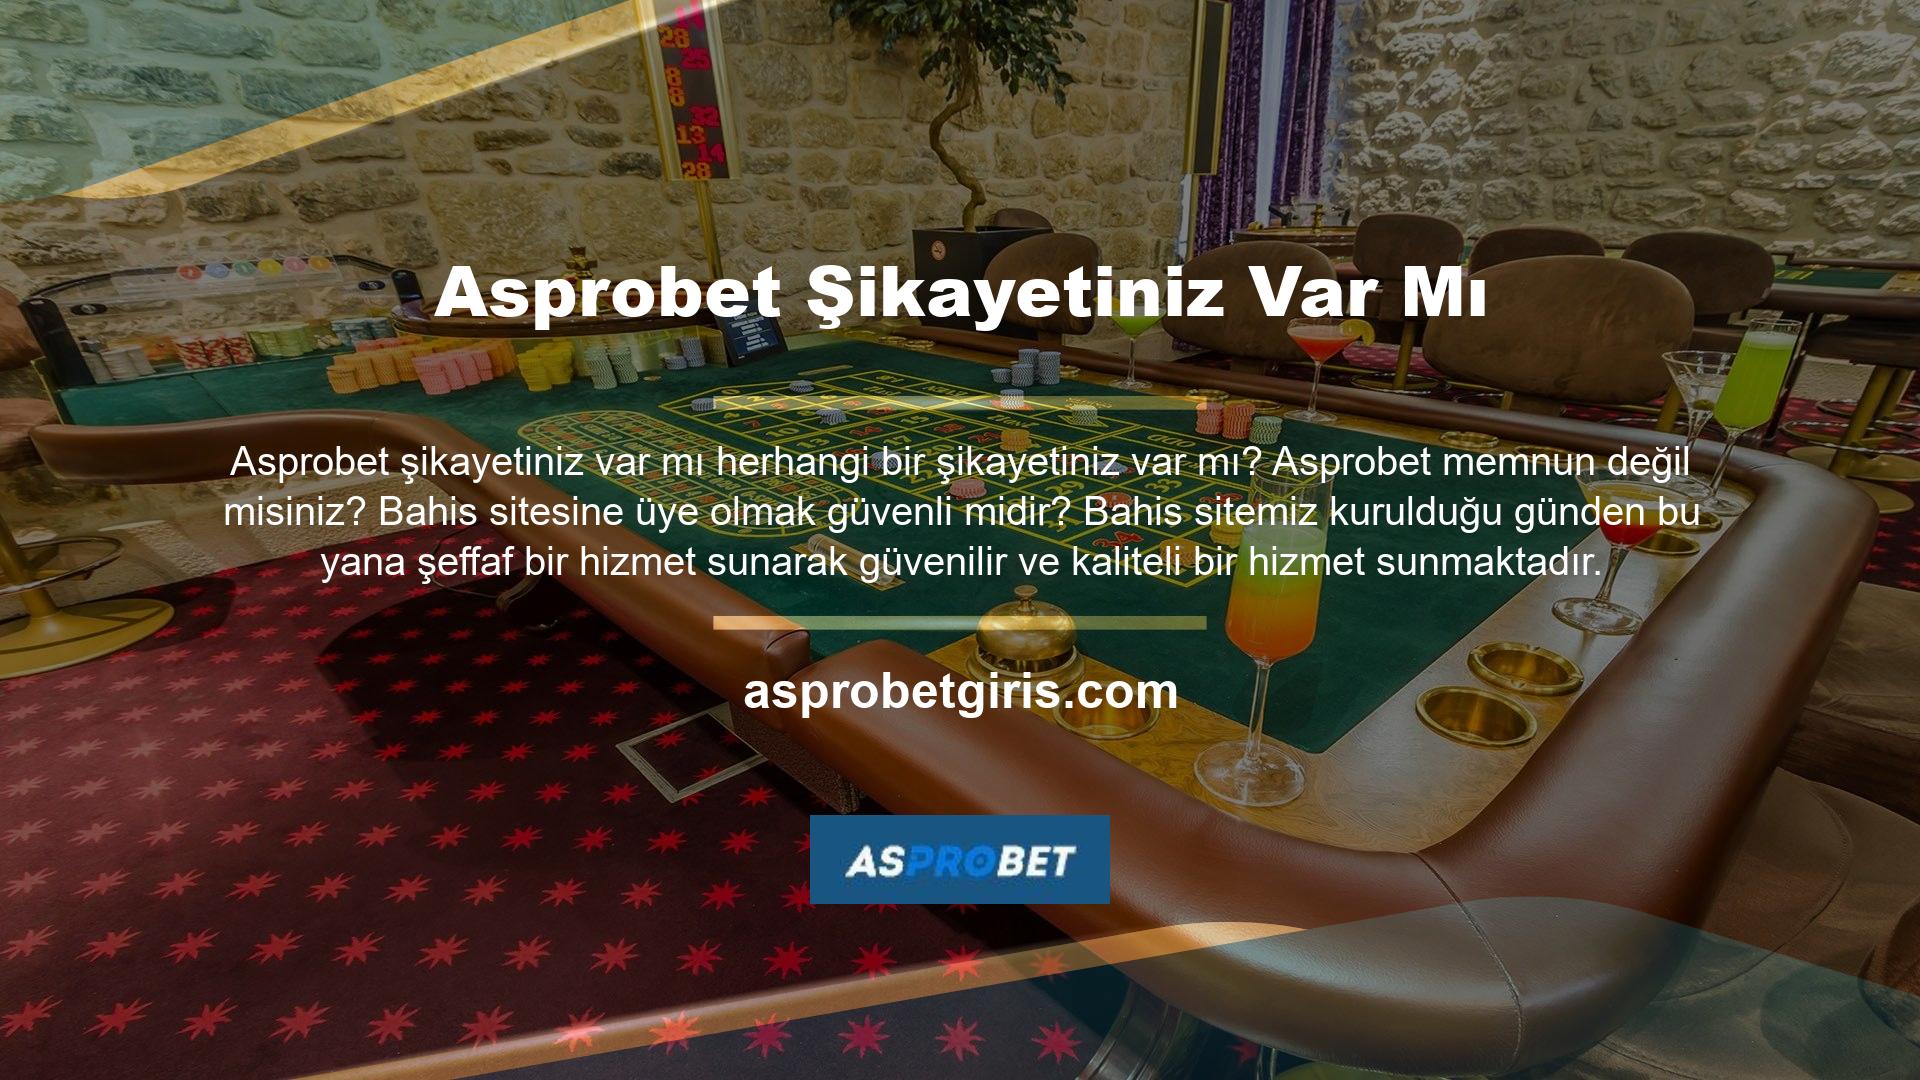 Asprobet casino sitesi bu hizmetleri sunmasına rağmen siteye çeşitli şikayetler gelmiştir